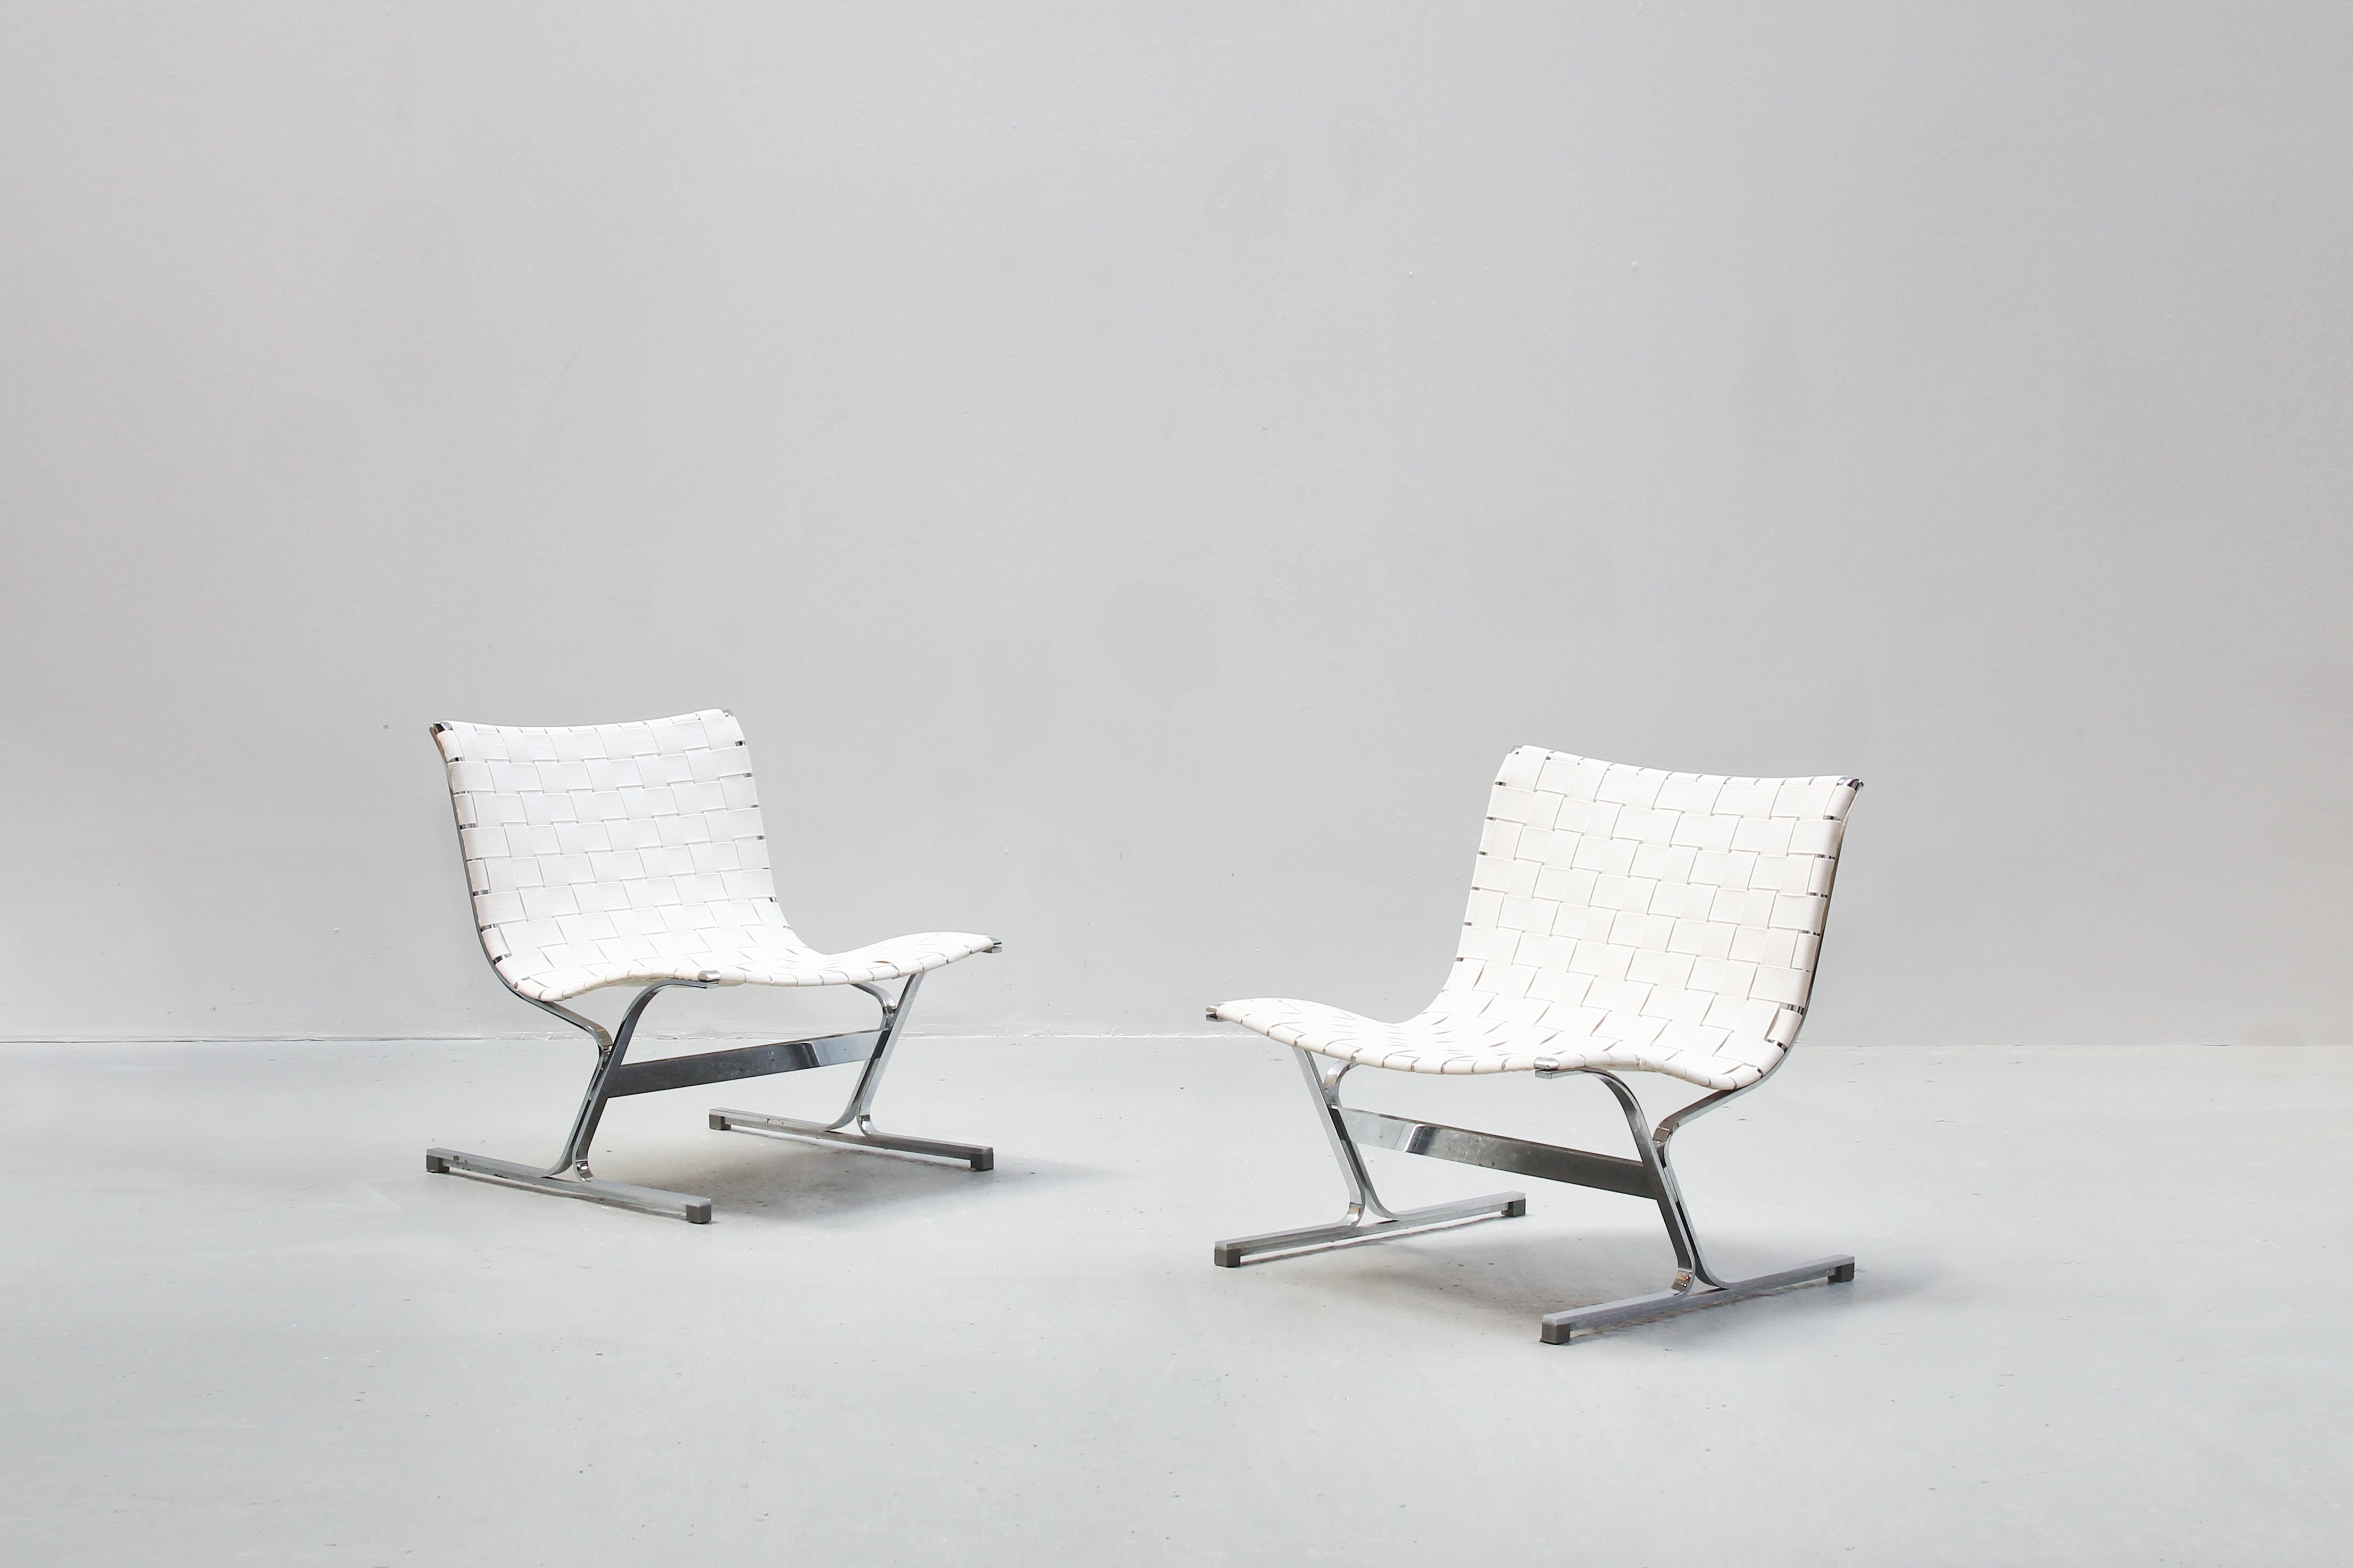 Ein Paar schöner Loungesessel, entworfen von Ross Littell und hergestellt von ICF, Italien in den 1970er Jahren.
Beide Stühle sind mit weißen Stoffgurten bezogen und befinden sich in einem sehr guten Zustand mit nur geringen Gebrauchsspuren.

  